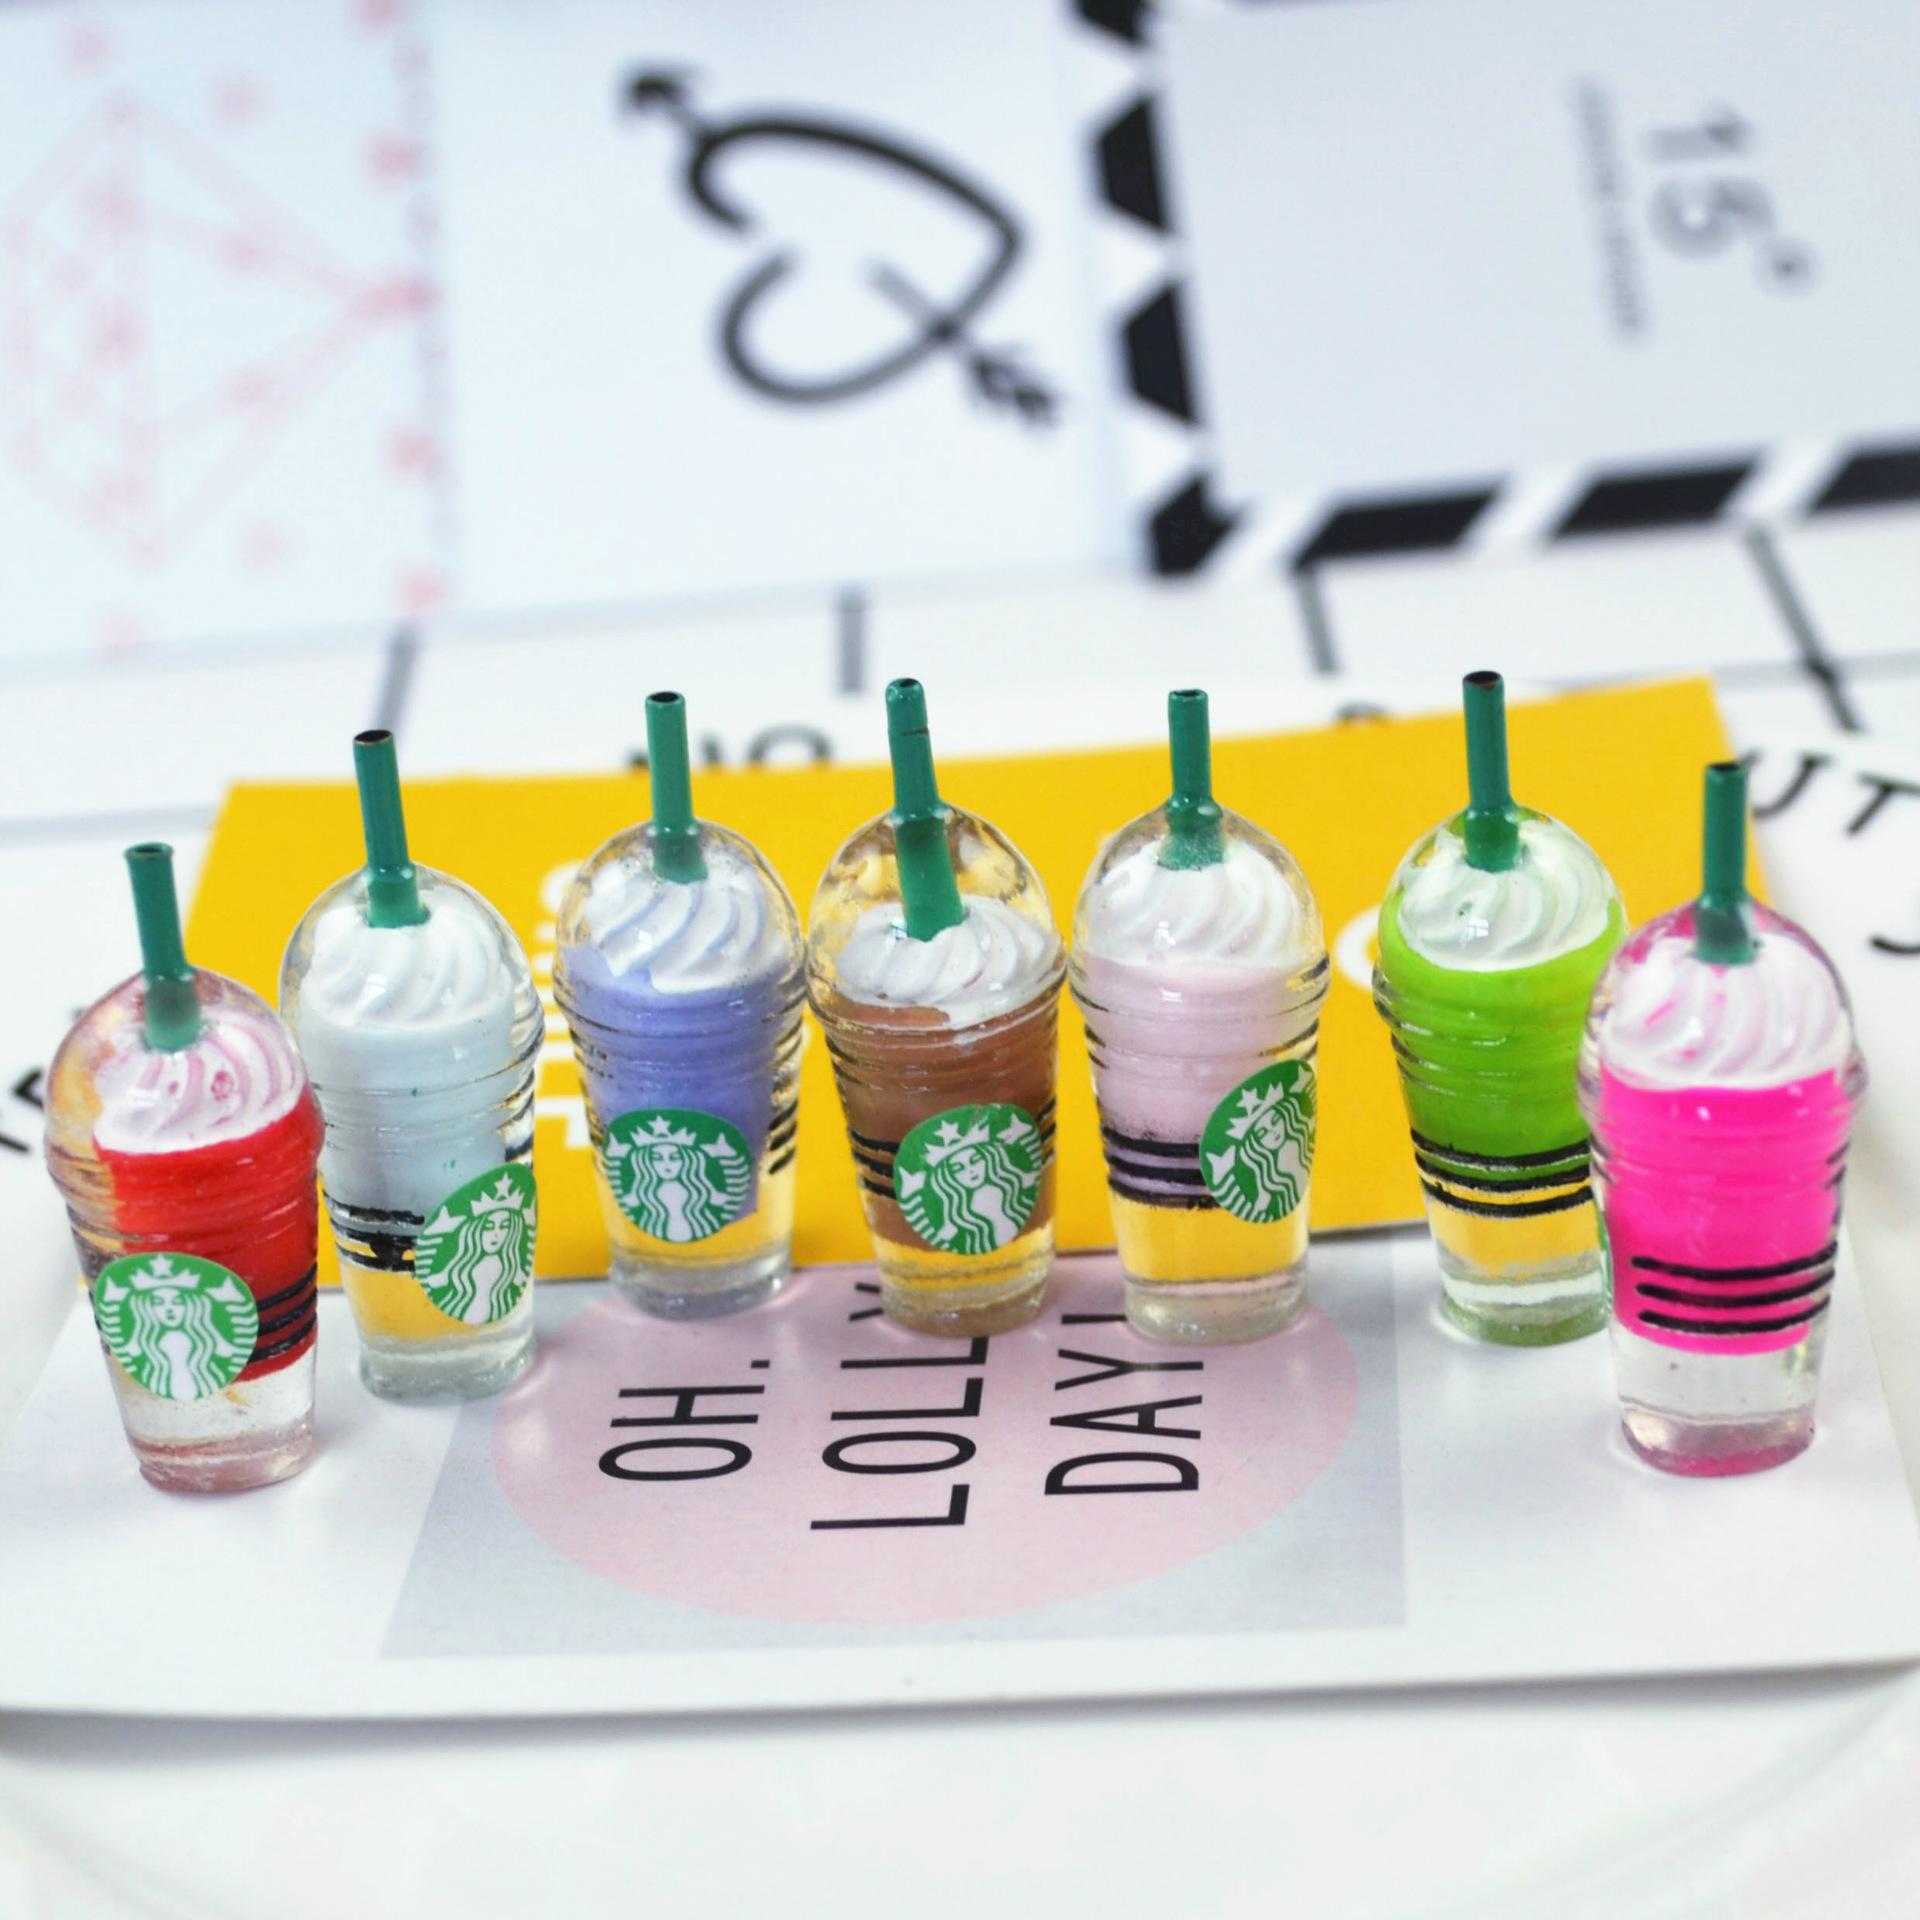 Mô hình 5 áp lực cạnh tranh của Starbucks  five forces của Starbucks